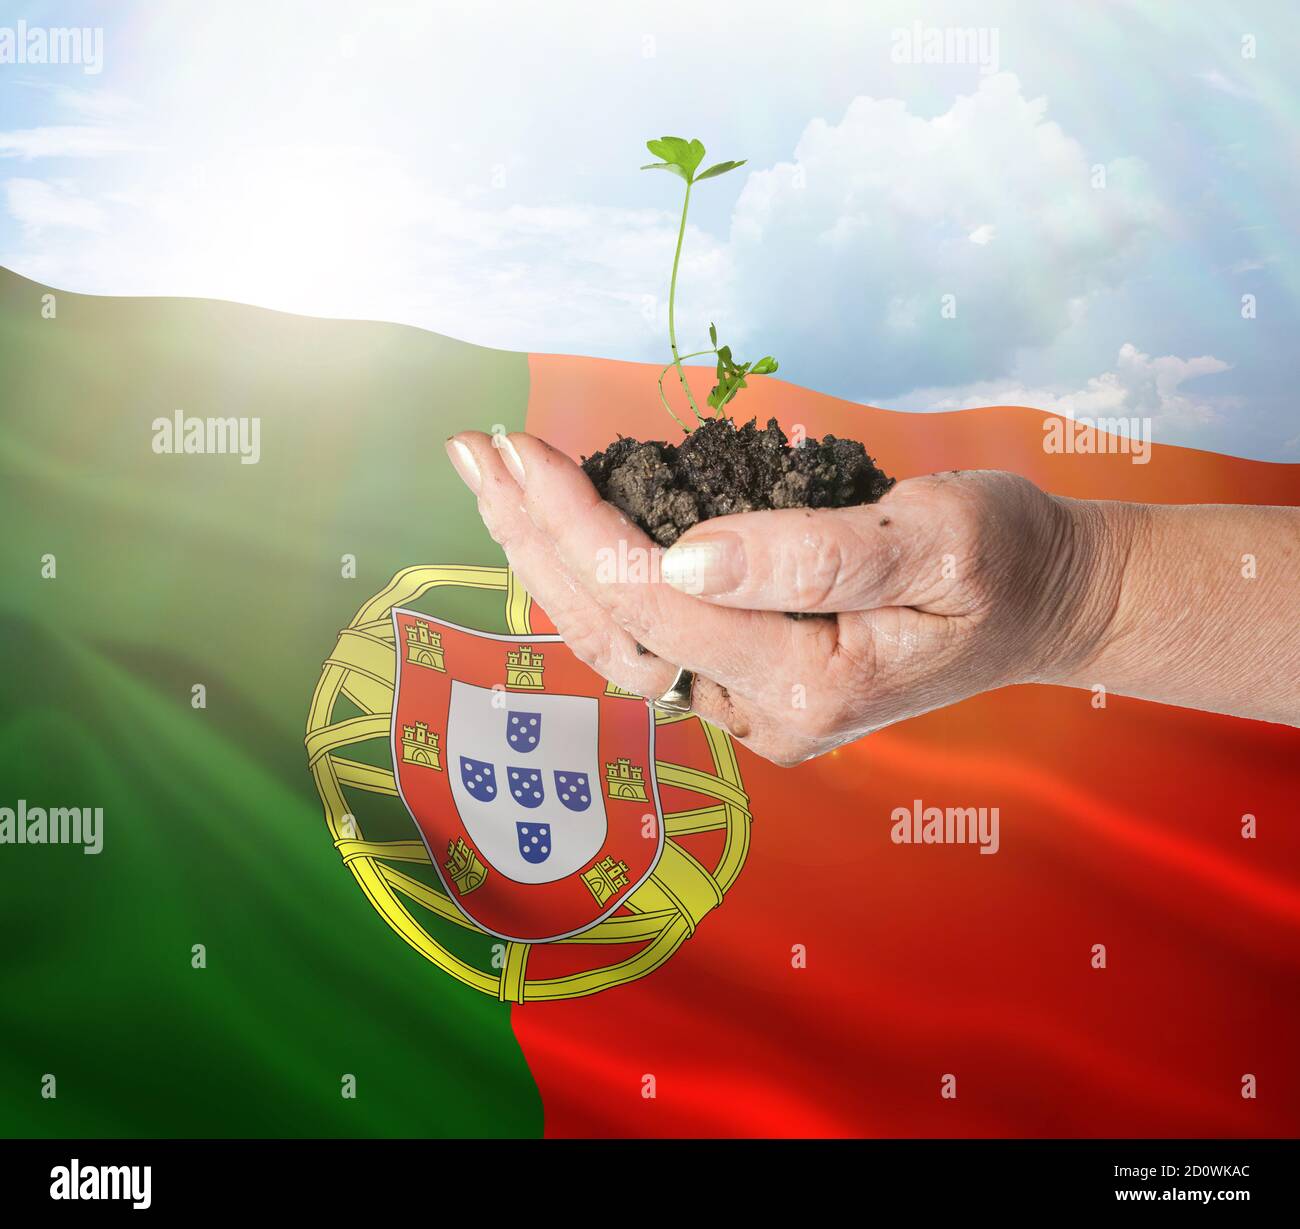 Portugal crecimiento y nuevo comienzo. Concepto de energía renovable verde y ecología. Mano sosteniendo planta joven. Foto de stock